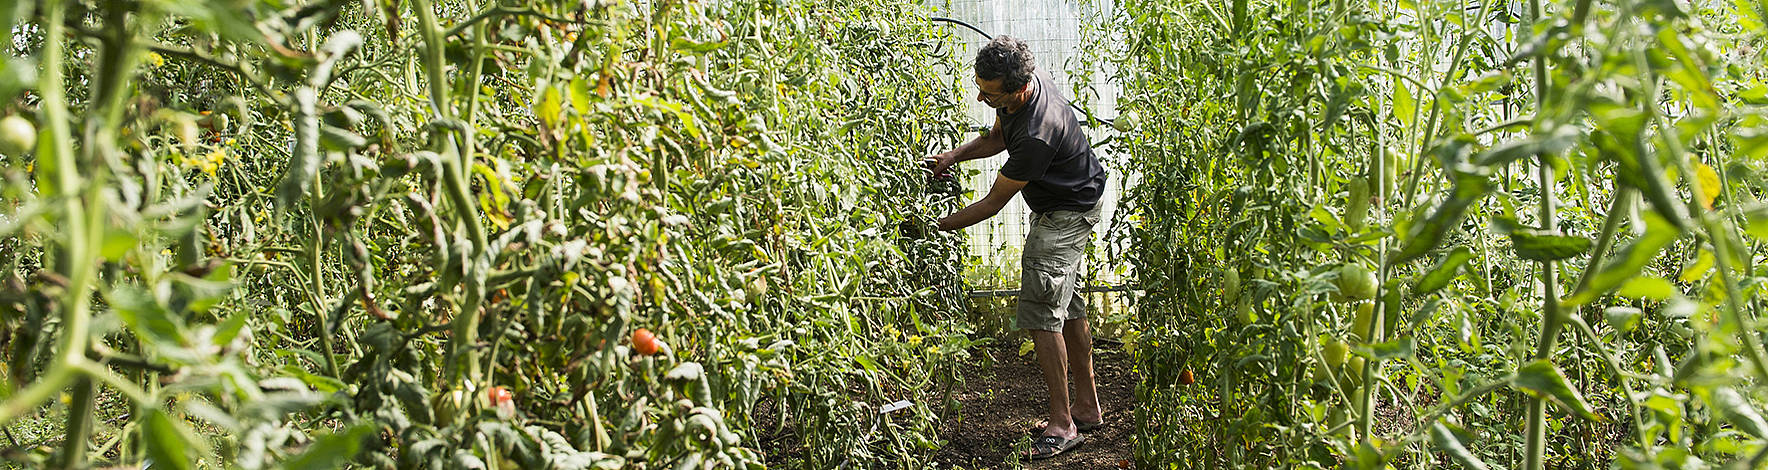 Un jardinier amateur cueille des tomates dans un jardin potager urbain de Neuchâtel.